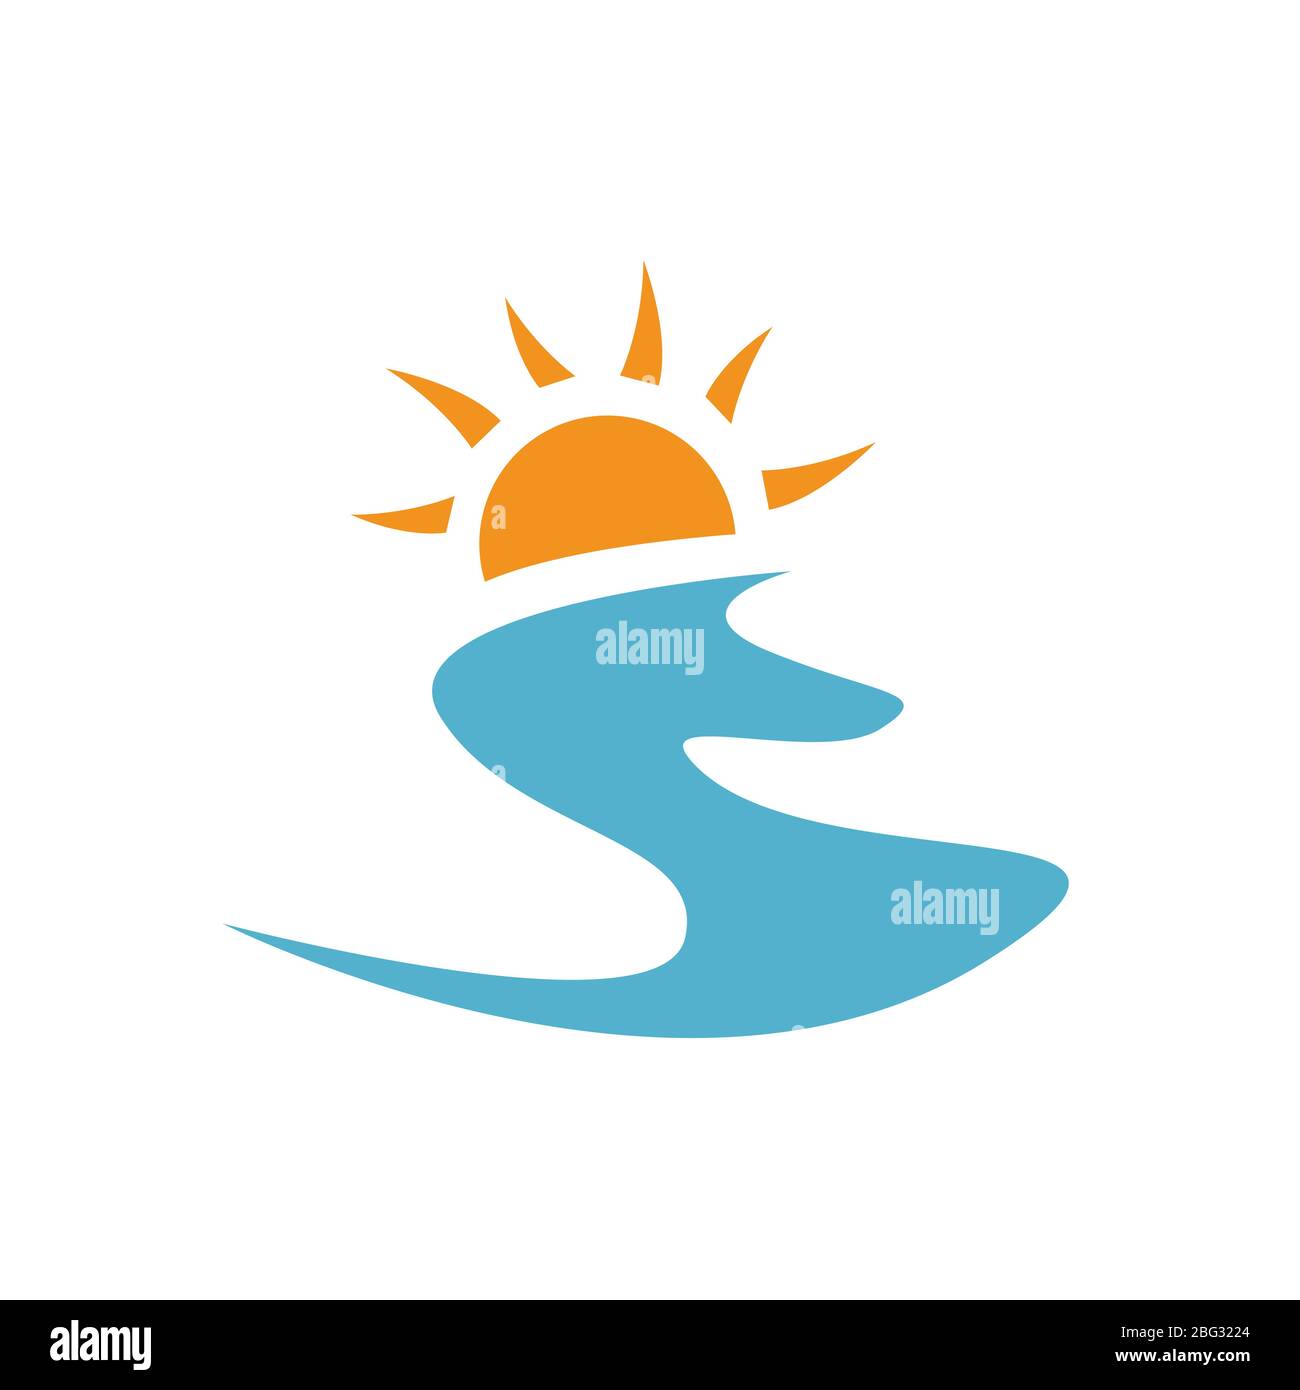 Einfache moderne abstrakt Sonnenuntergang Logo Design Vektor der gelben Sonne und blauen Wellen Illustration Stock Vektor